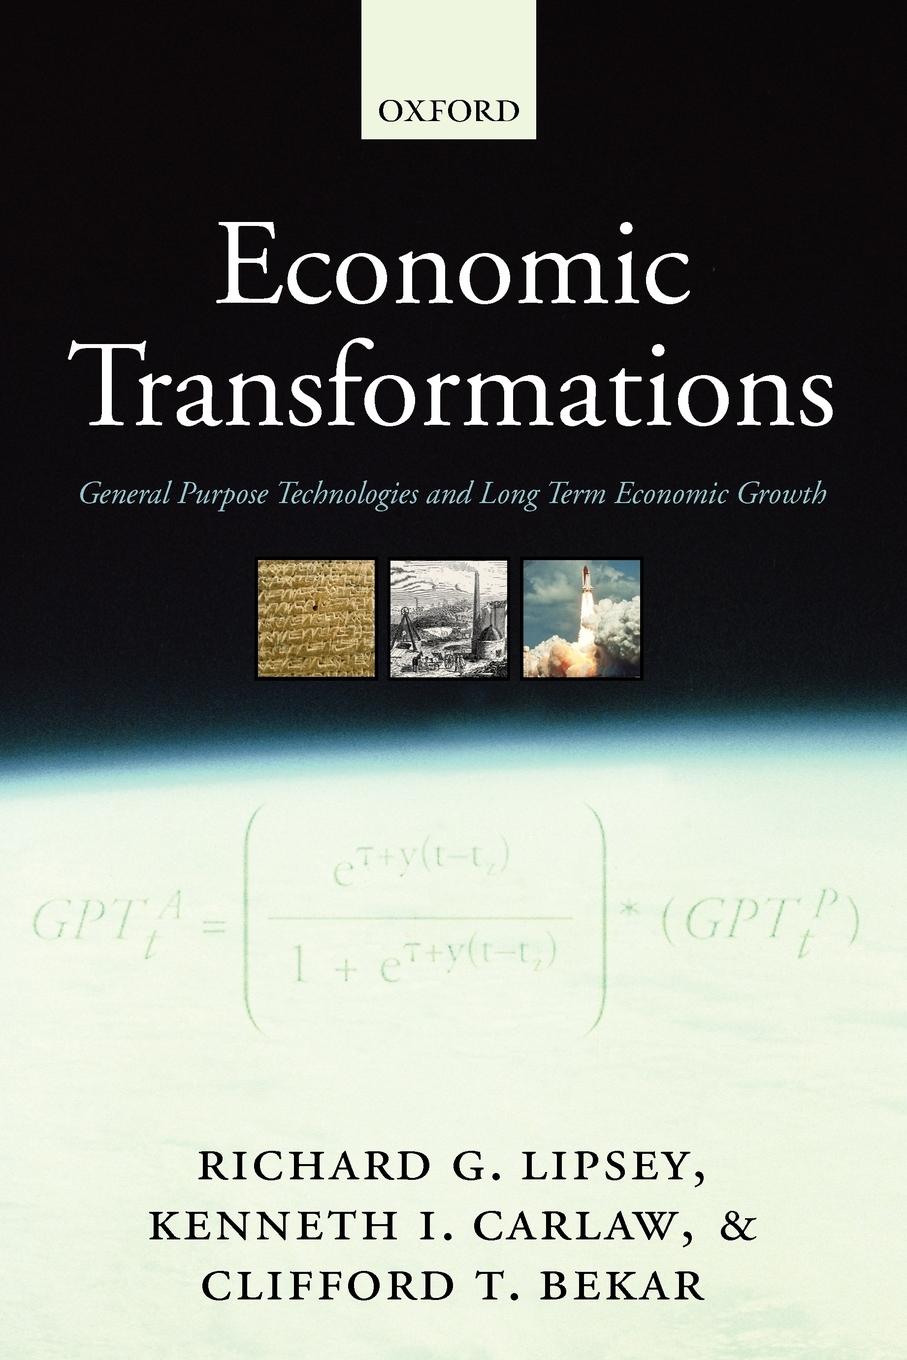 Economic Transformations - Lipsey, Richard G.|Carlaw, Kenneth I.|Bekar, Clifford T.